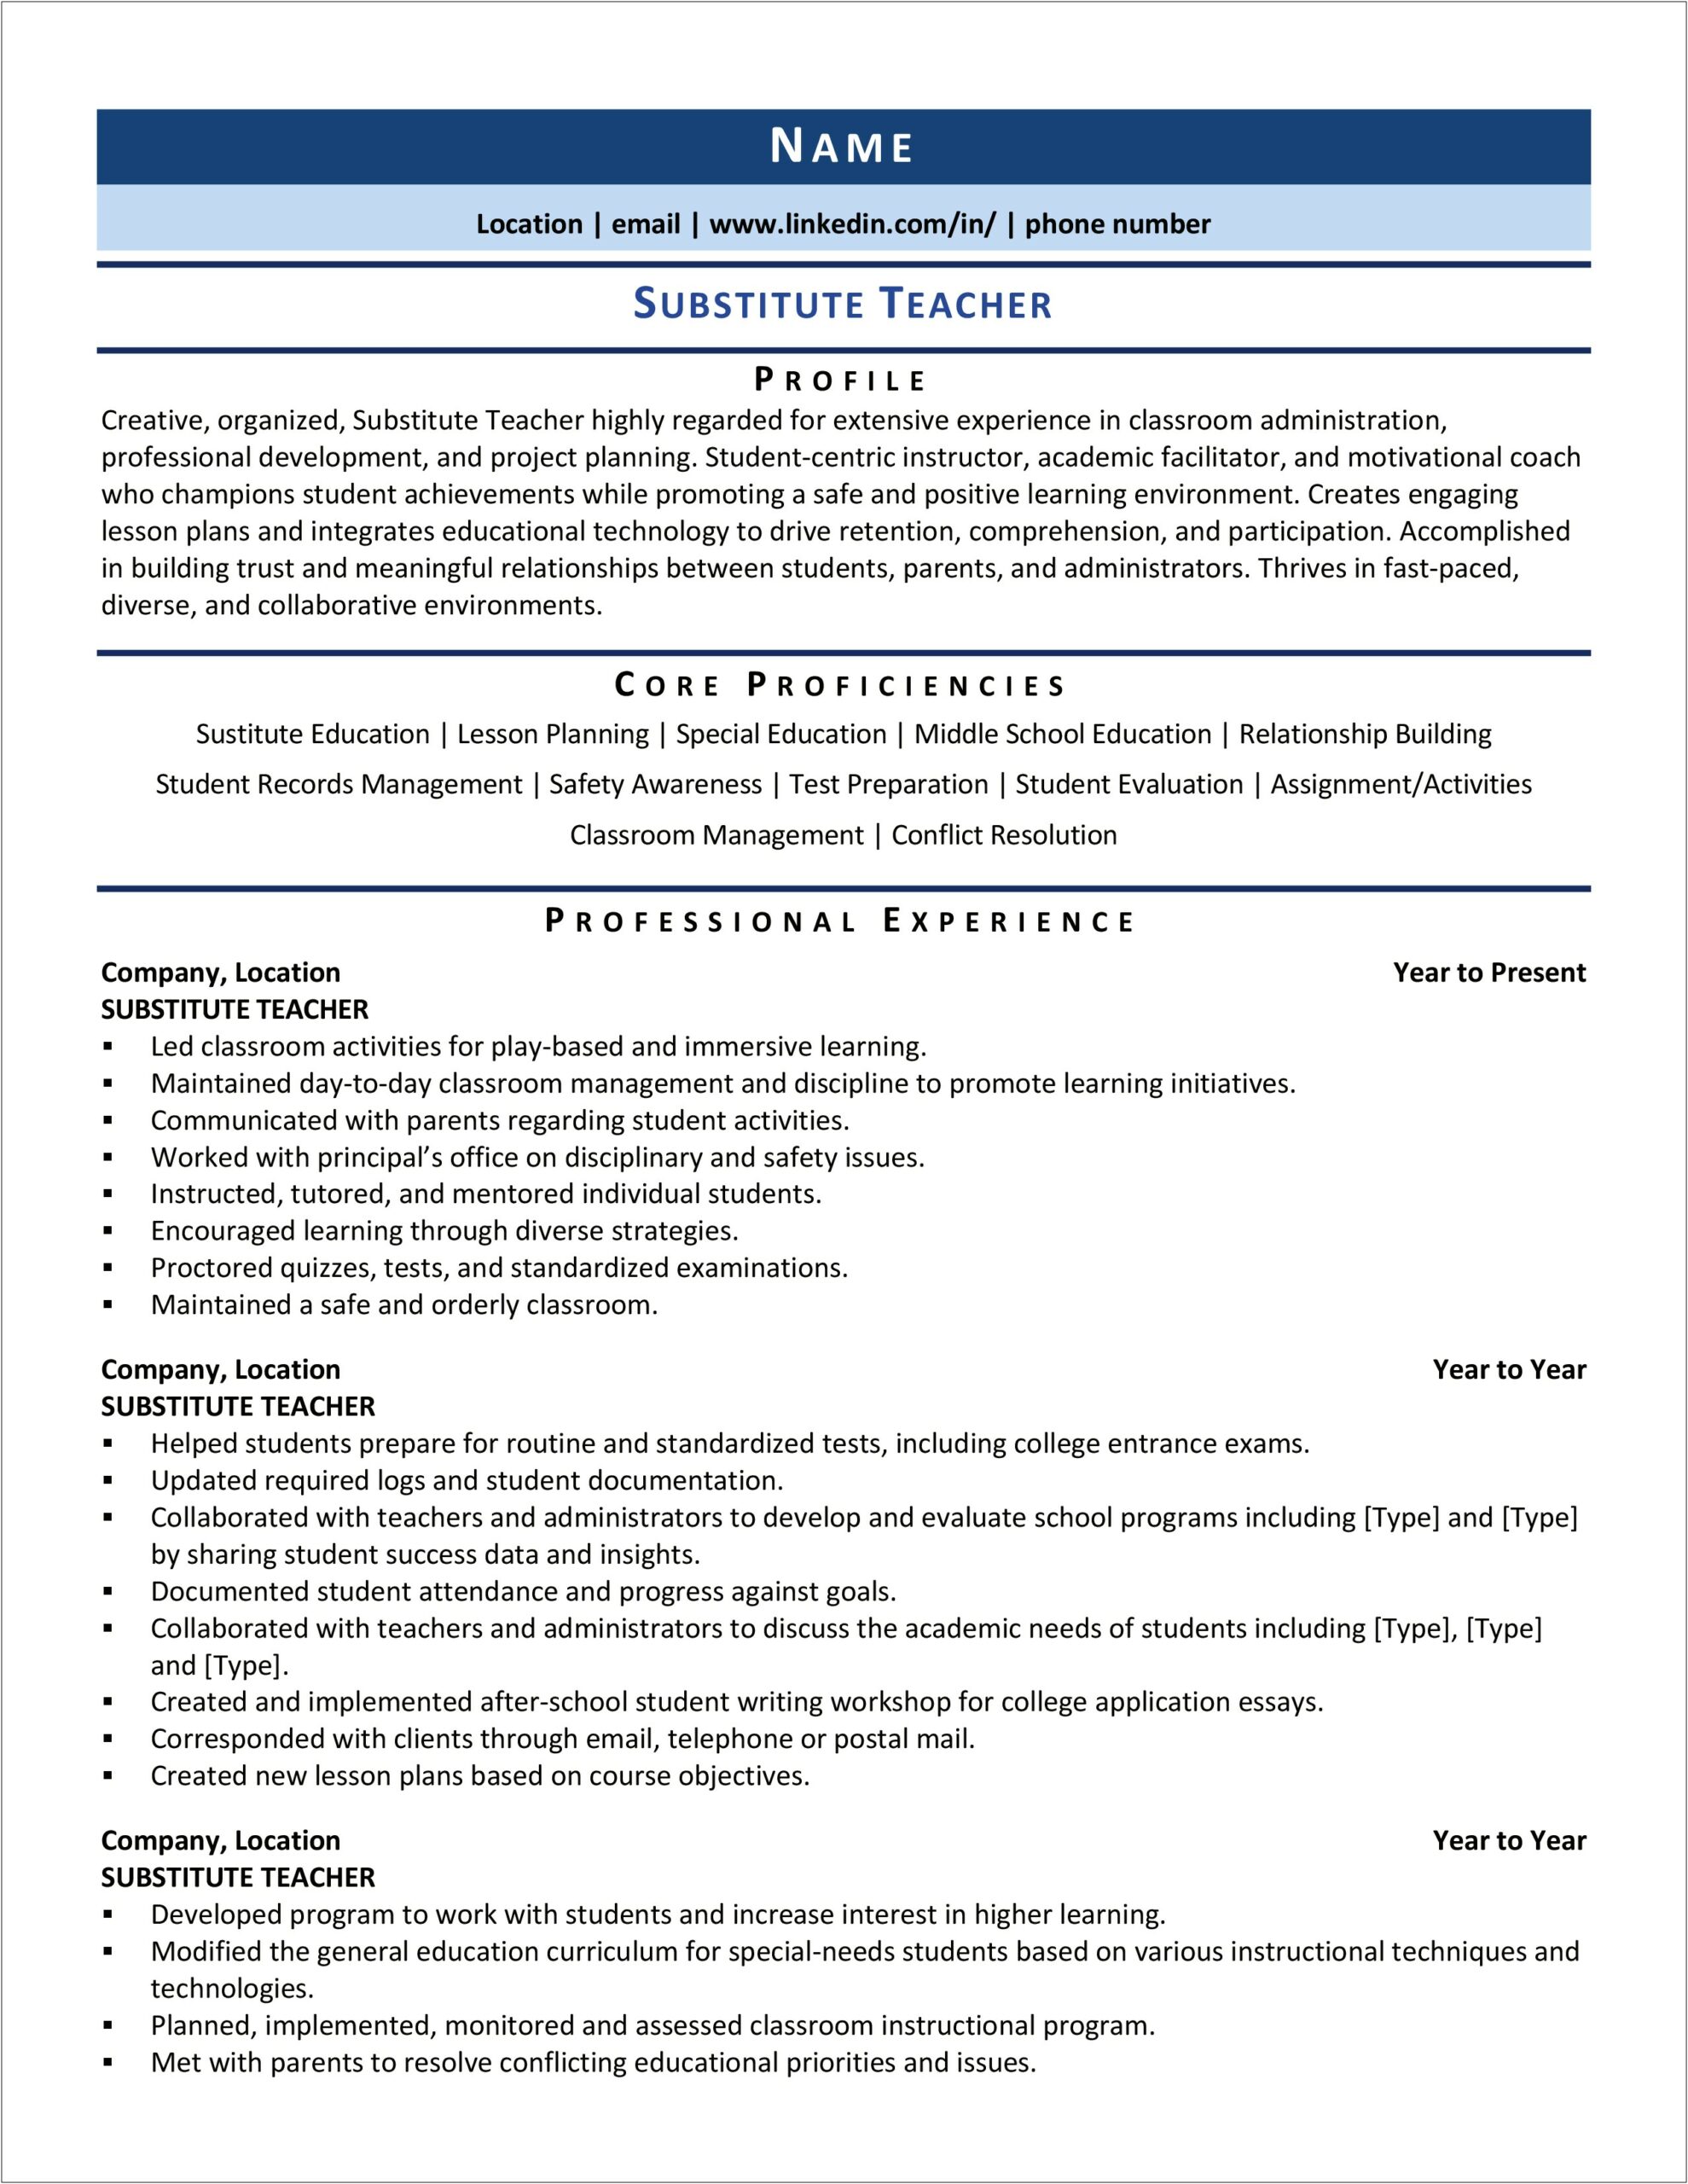 Resume Profile Samples For Teachers